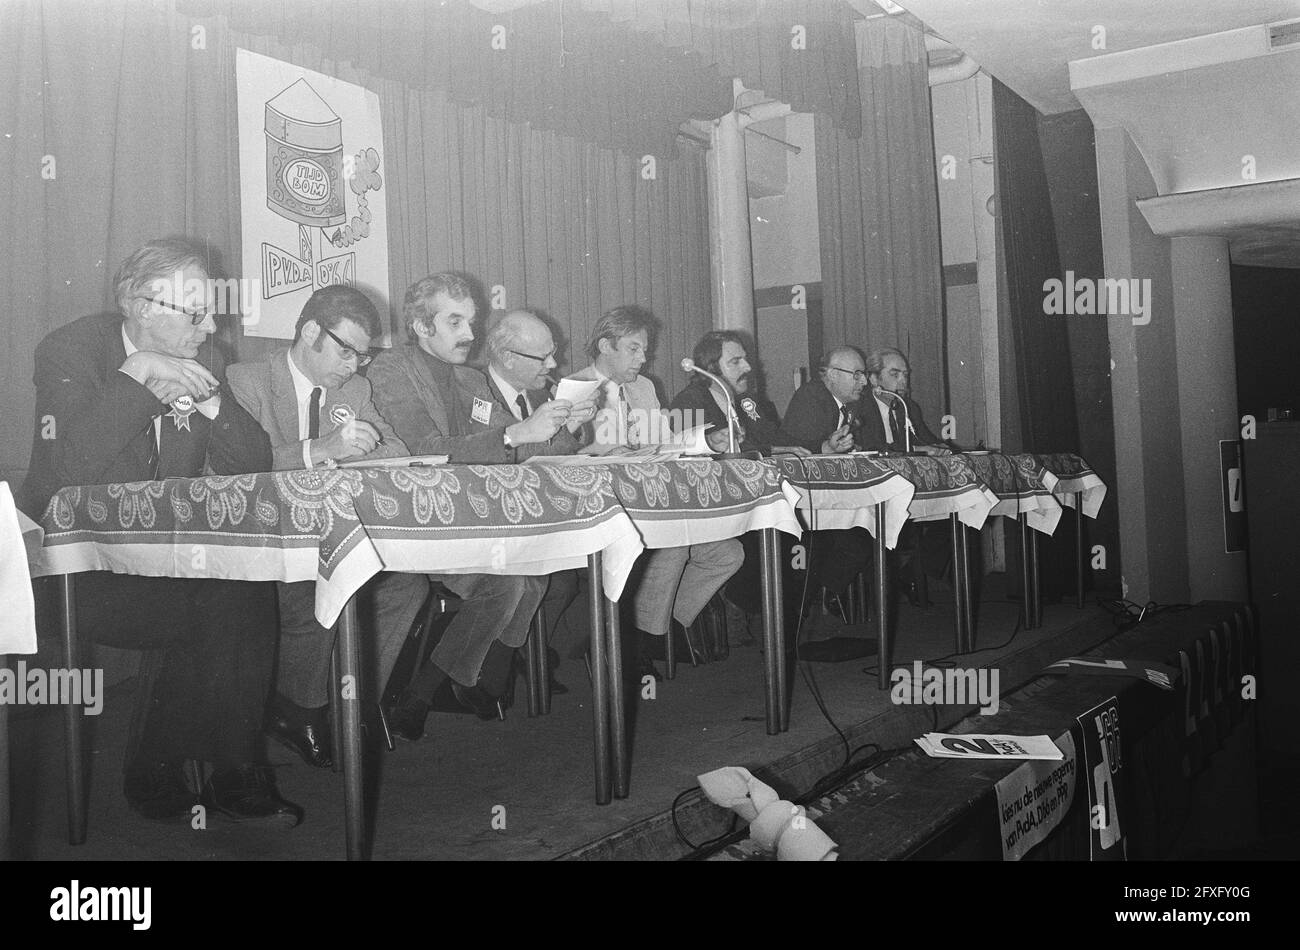 De izquierda a derecha Van der Stoel (PvdA), Van Thijn (PvdA), Jurgens (PPR), Den Uyl (PvdA), Van Mierlo (D66), Van der Louw (PvdA), Van den Bergh (PvdA), Van Lookeren Campagne (D66), 26 de abril de 1971, reuniones, políticos, Partidos políticos, Países Bajos, agencia de prensa del siglo 20th foto, noticias para recordar, documental, fotografía histórica 1945-1990, historias visuales, Historia humana del siglo XX, capturando momentos en el tiempo Foto de stock